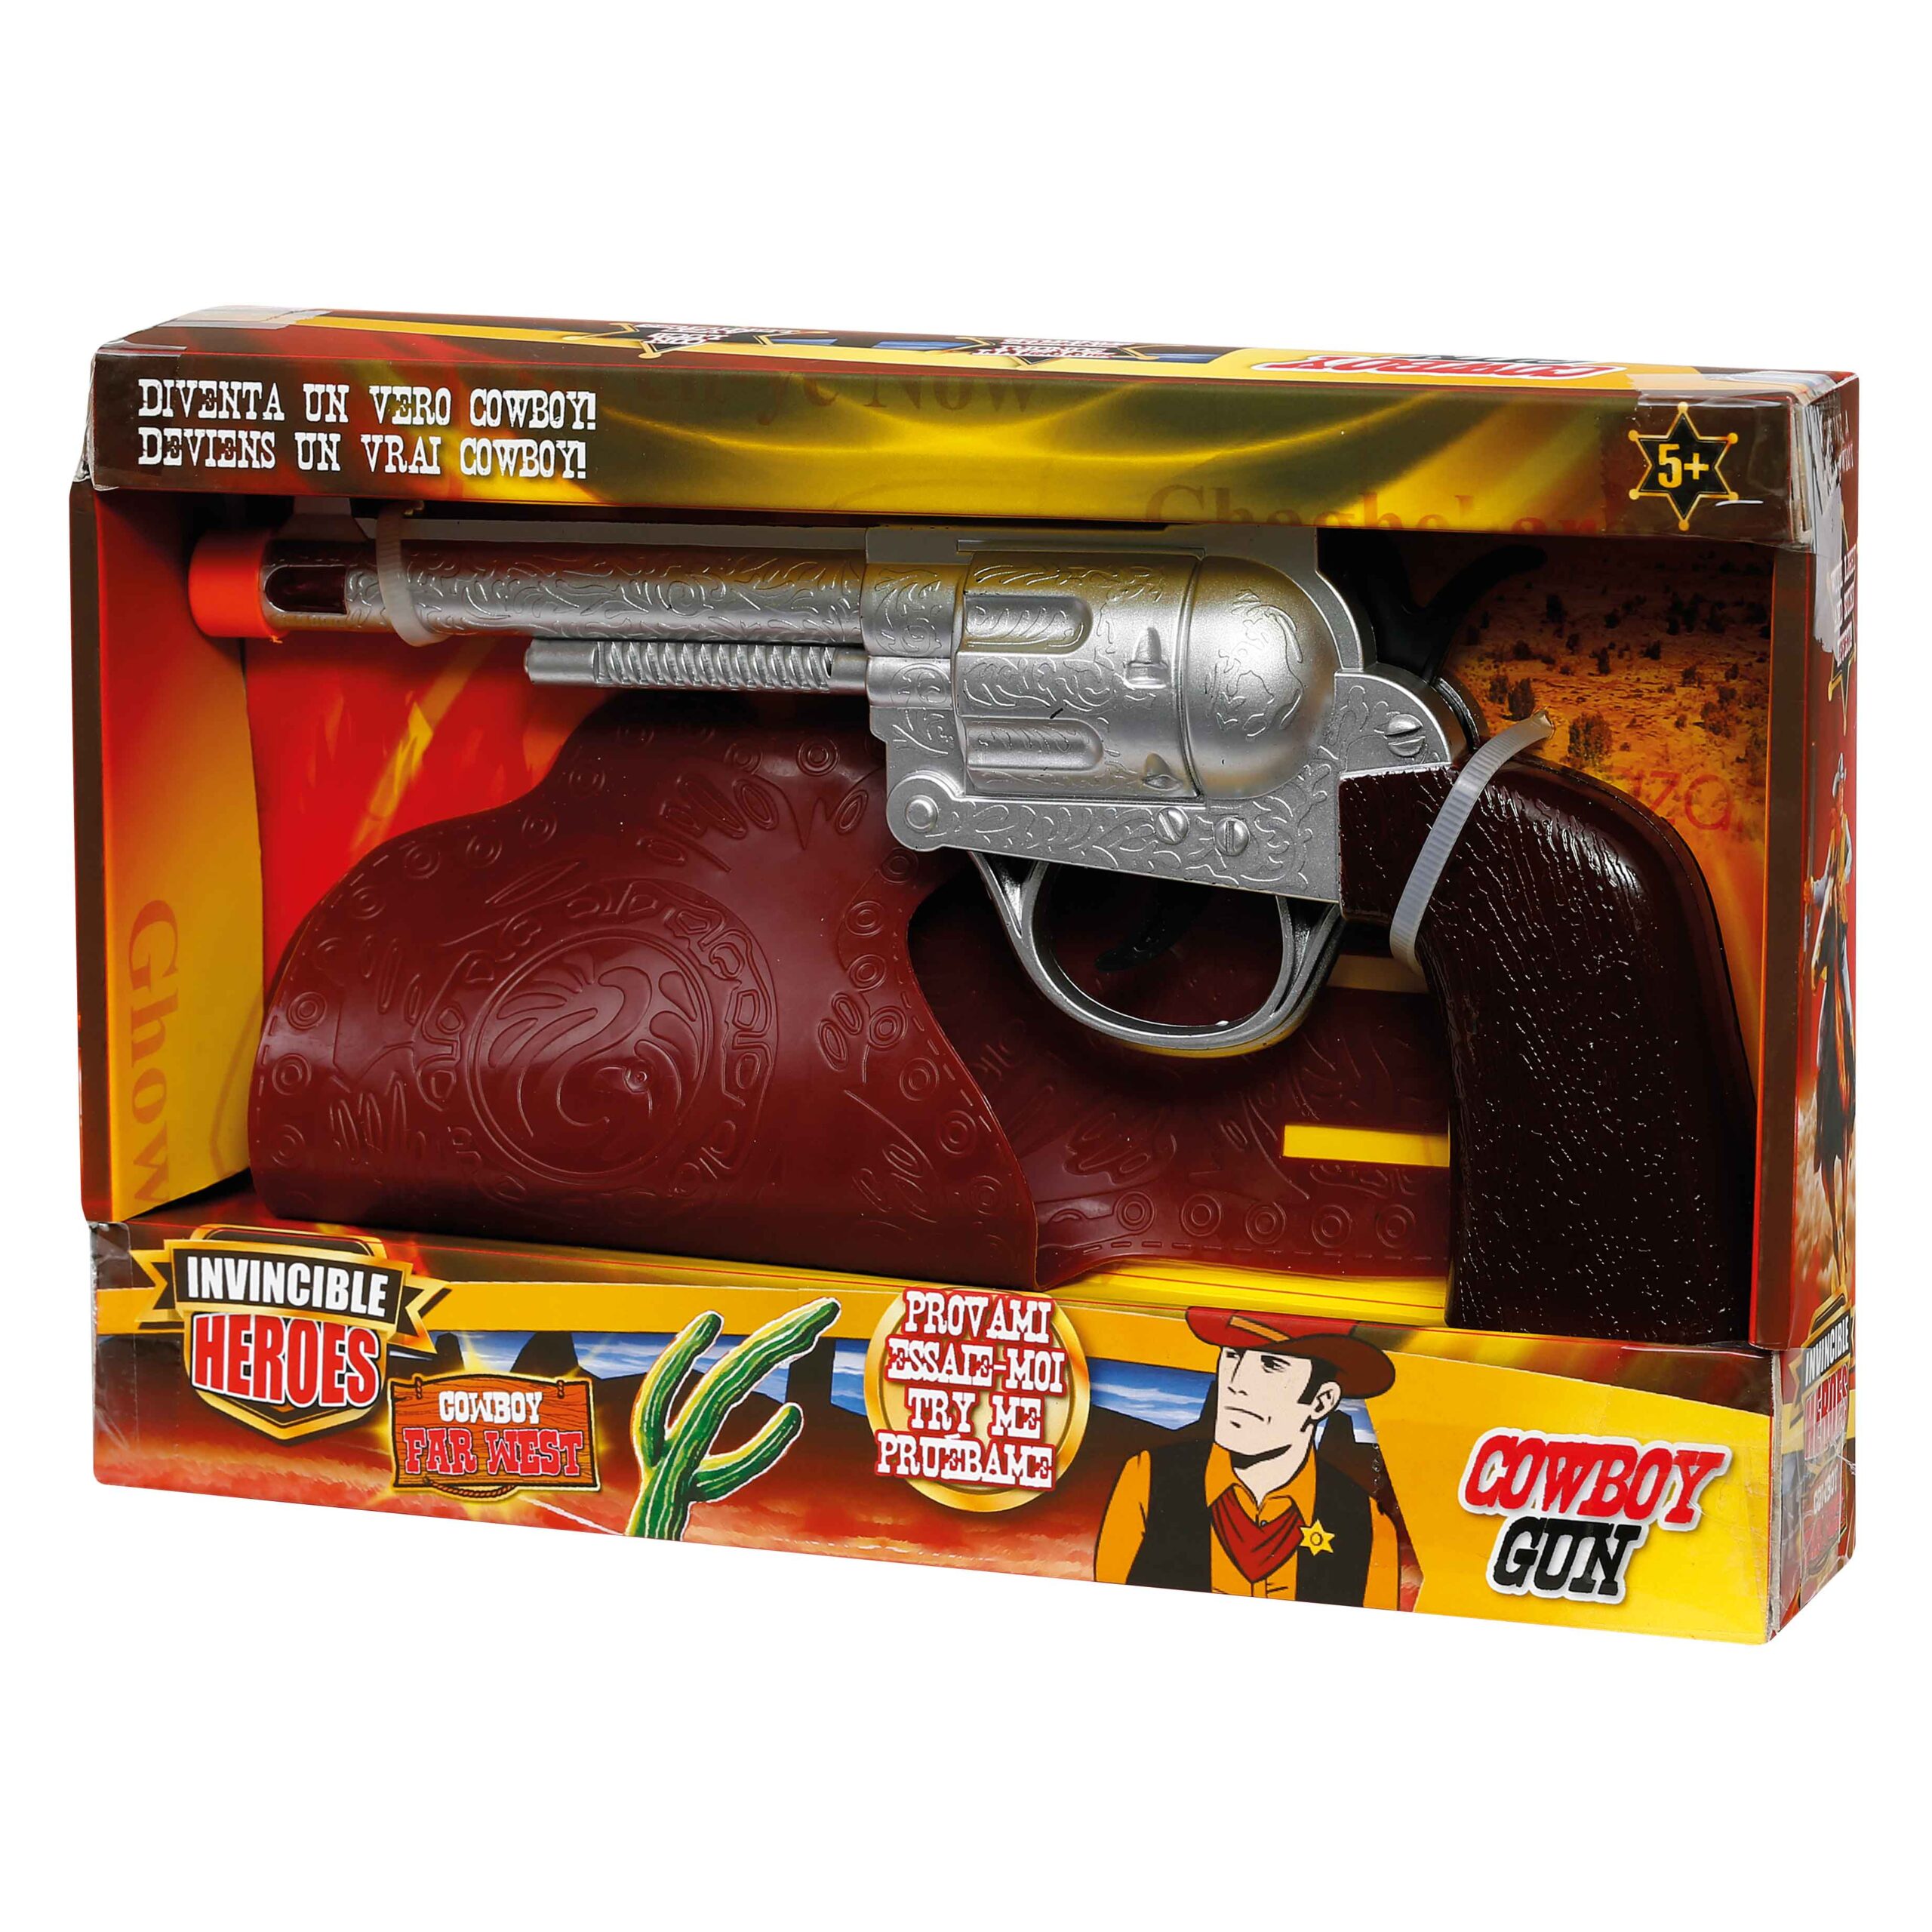 Pistola giocattolo in metallo revolver da Cowboy e polizia anni 20 30